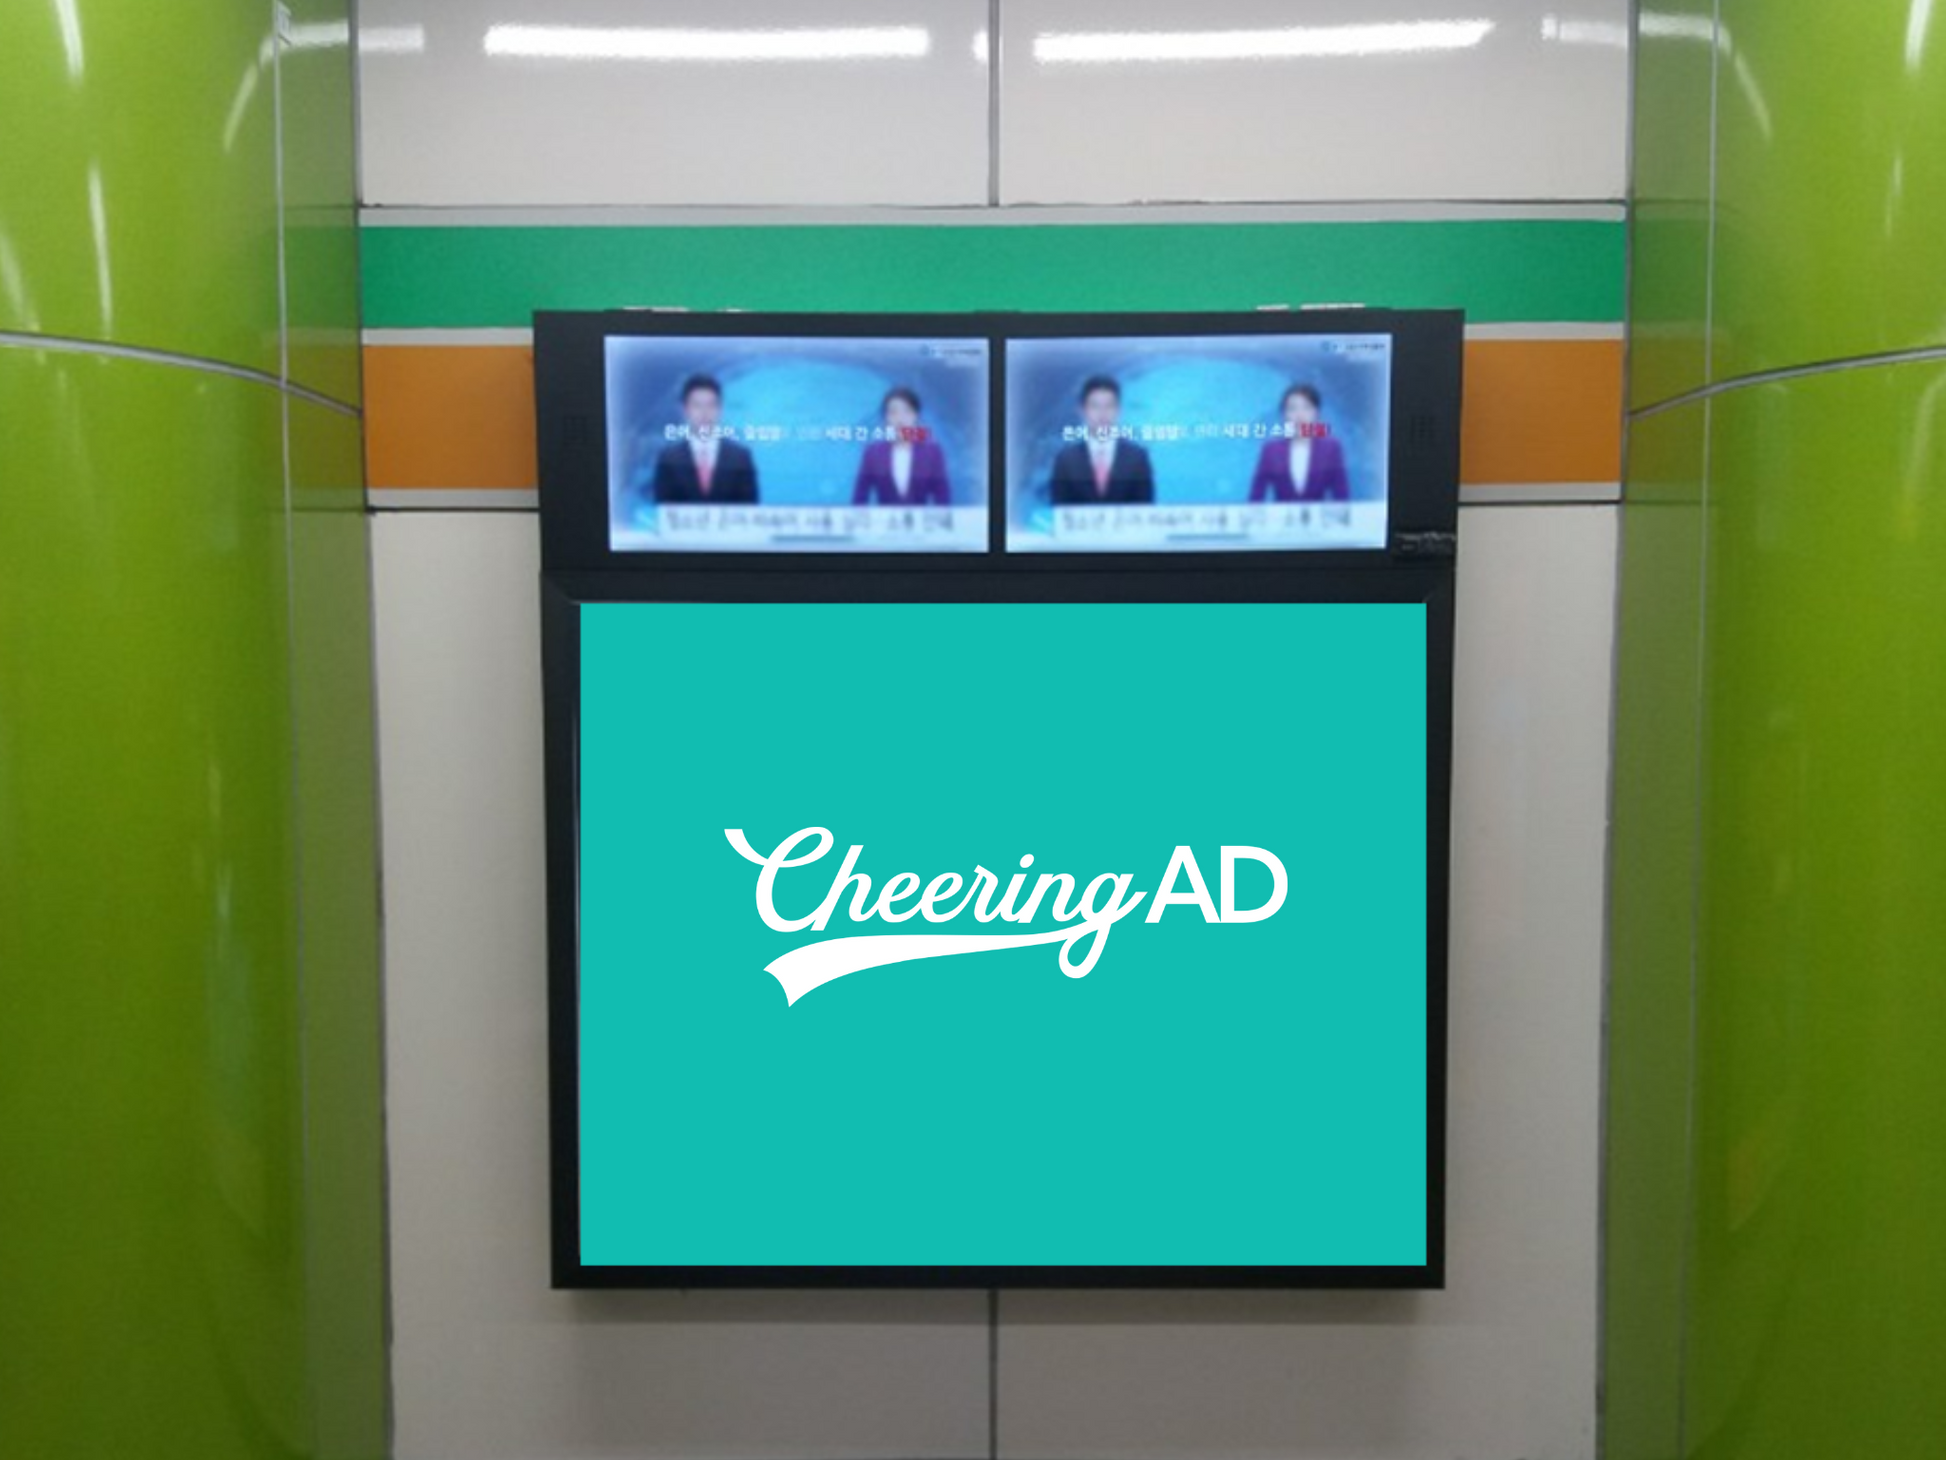 ソウル地下鉄 7号線 高速ターミナル ライトボックス_応援広告センイル広告_jeki